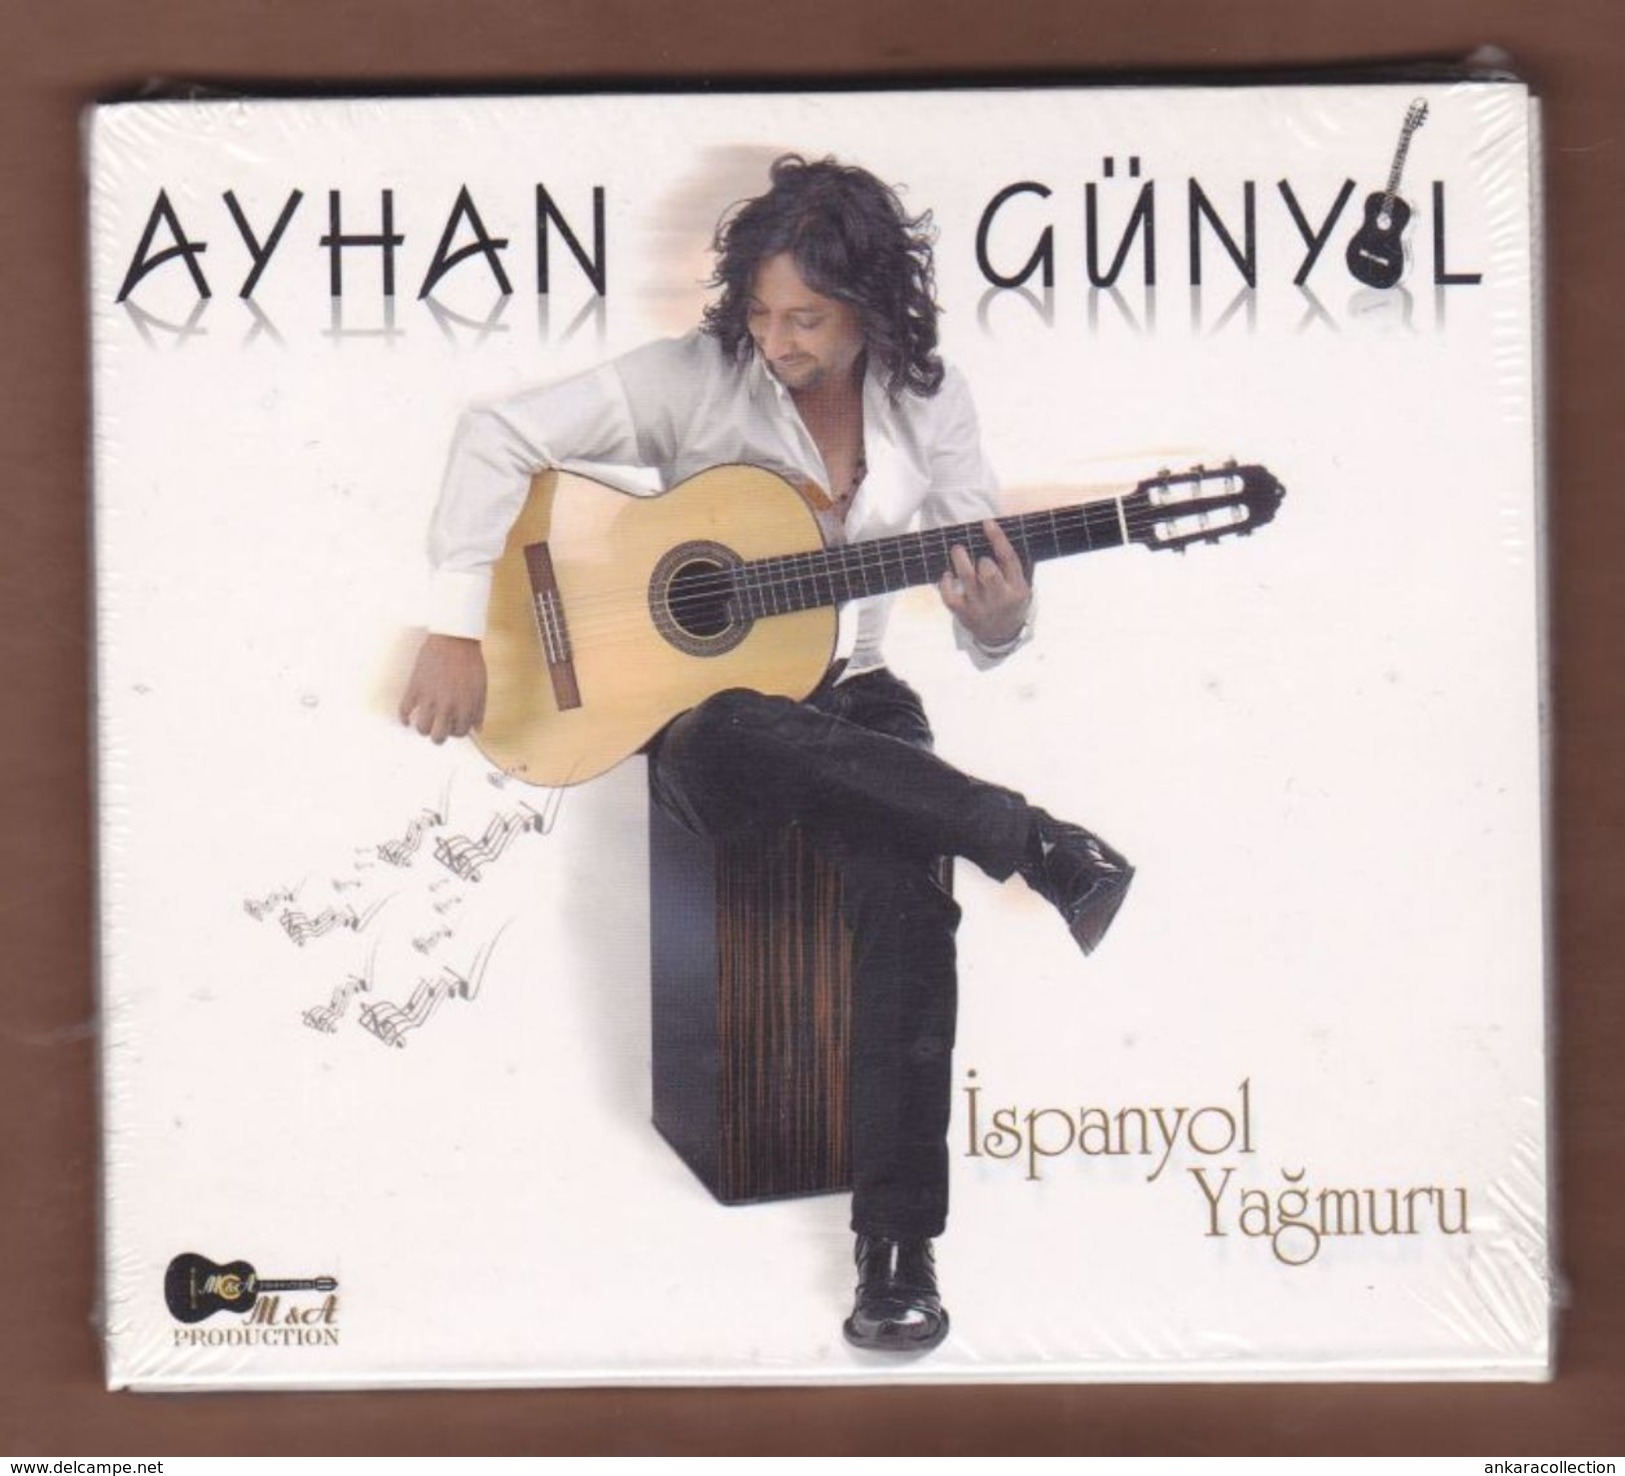 AC -  AYHAN GUNYOL ISPANYOL YAGMURU BRAND NEW TURKISH MUSIC CD - World Music